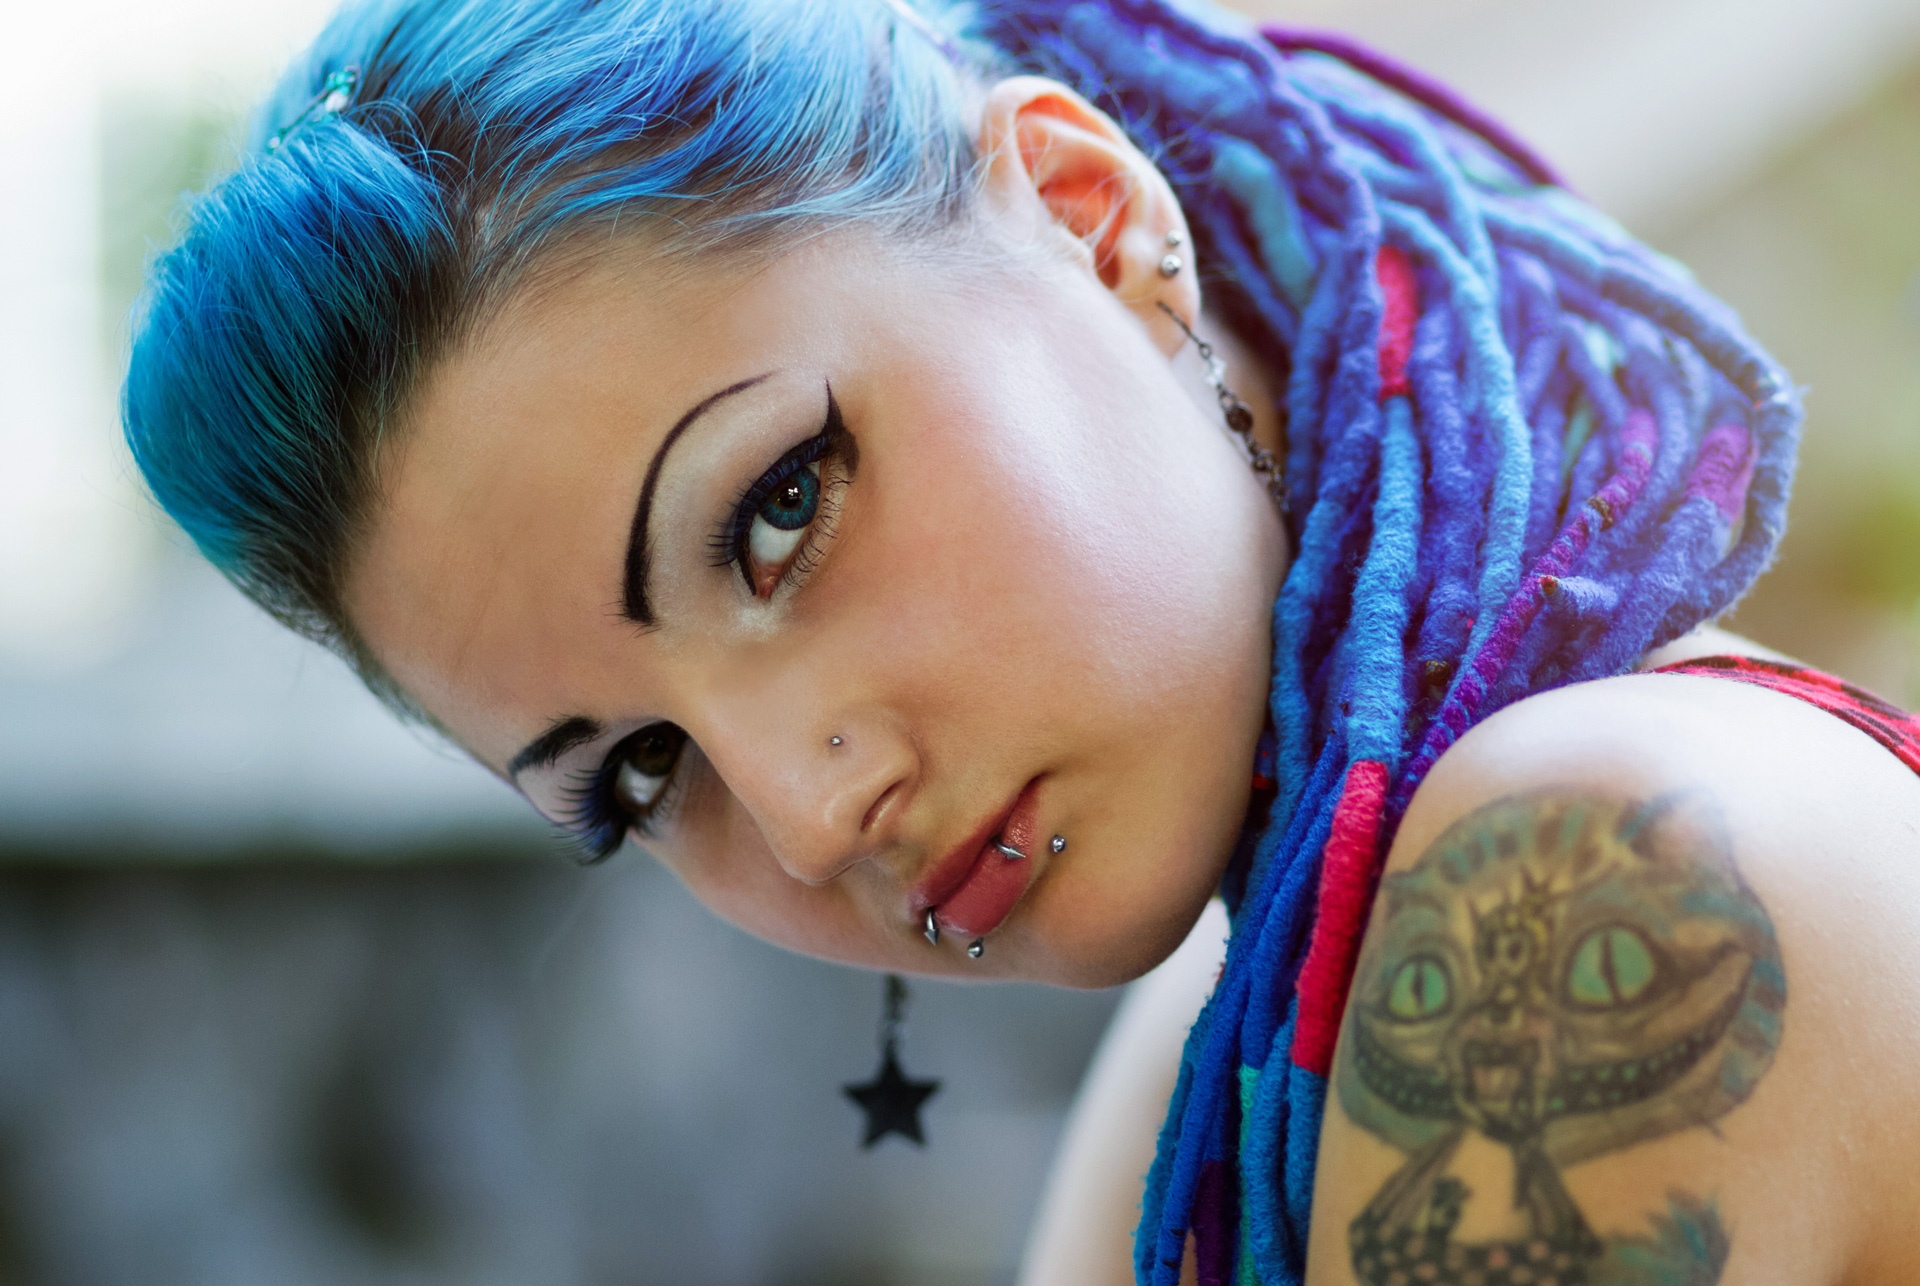 Junge Frau mit blauen Haaren und violetten Rasta-Locken, stark geschminkt mit Tattoo auf der Schulter.